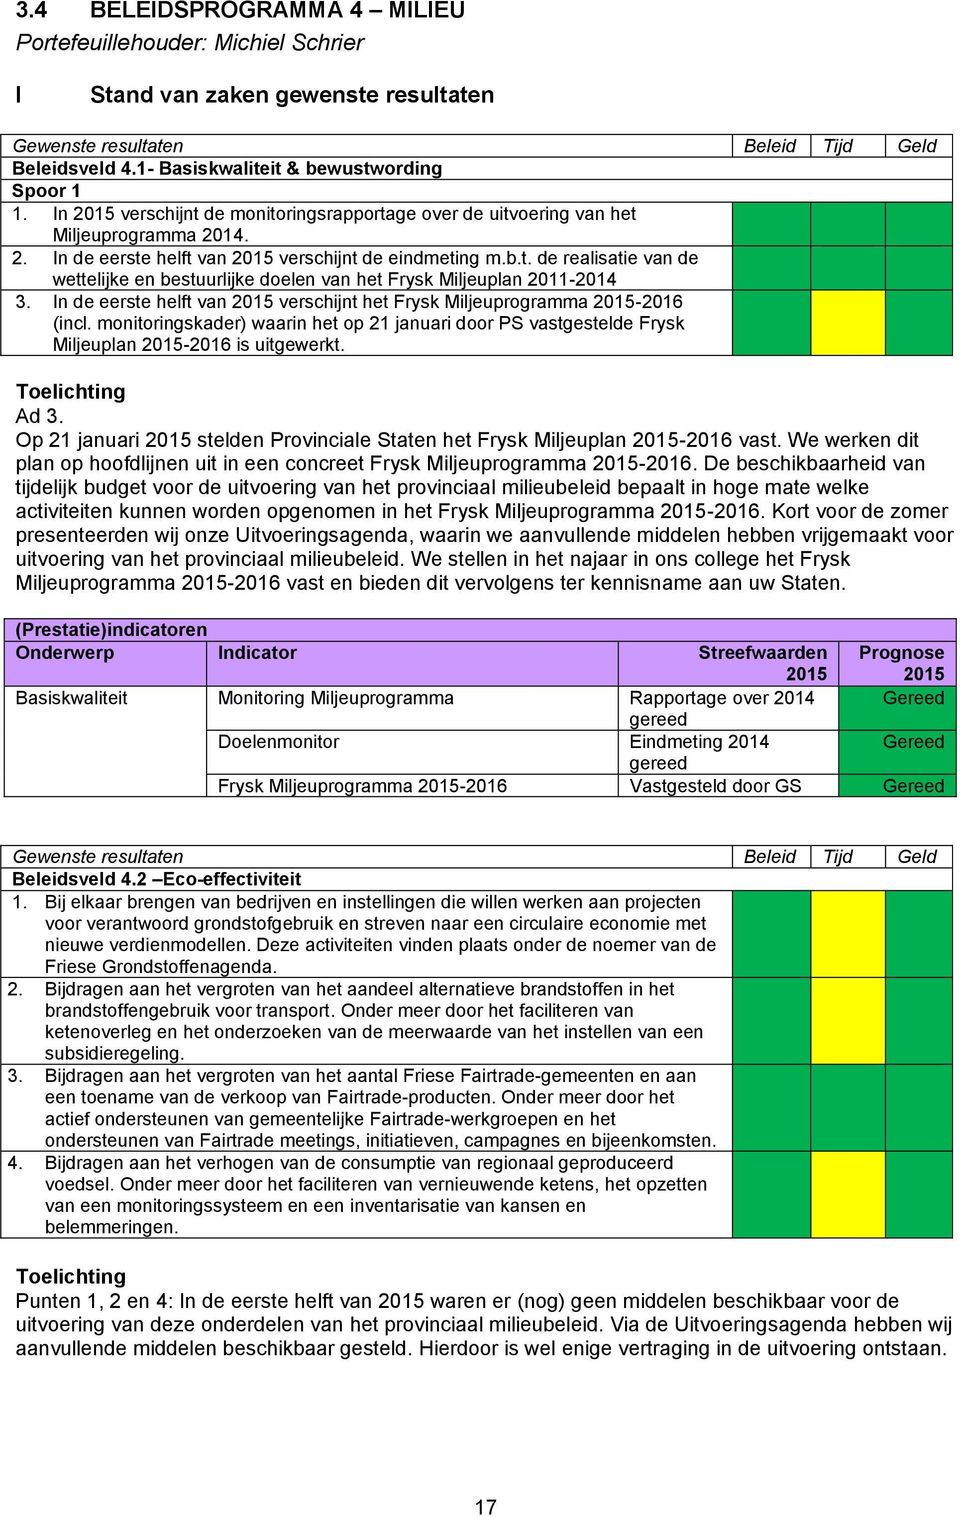 In de eerste helft van 2015 verschijnt het Frysk Miljeuprogramma 2015-2016 (incl. monitoringskader) waarin het op 21 januari door PS vastgestelde Frysk Miljeuplan 2015-2016 is uitgewerkt.